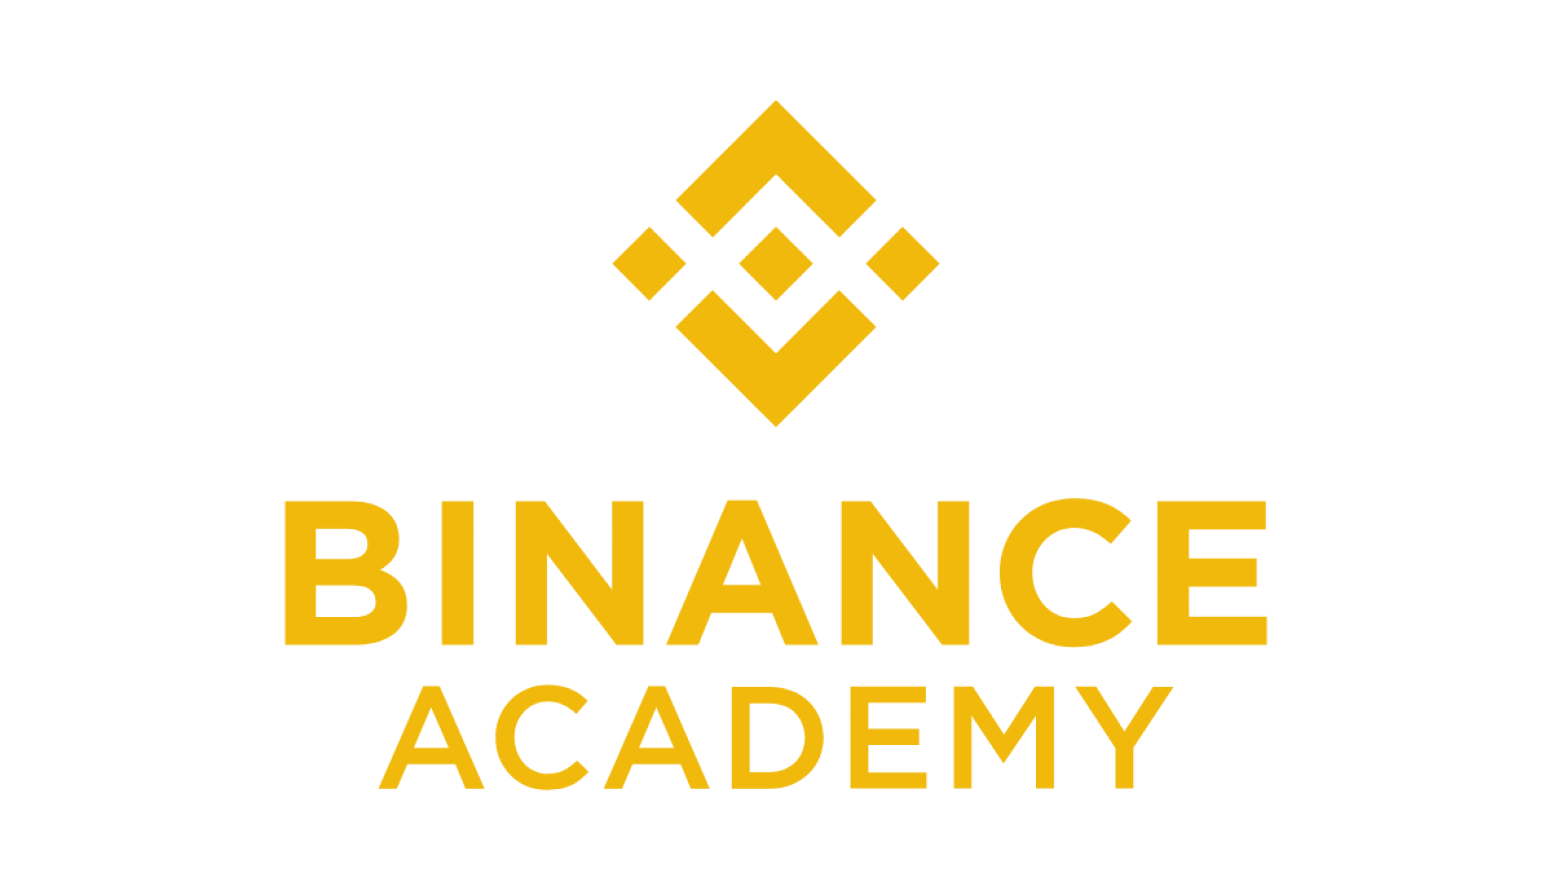 https://academy.binance.com/en